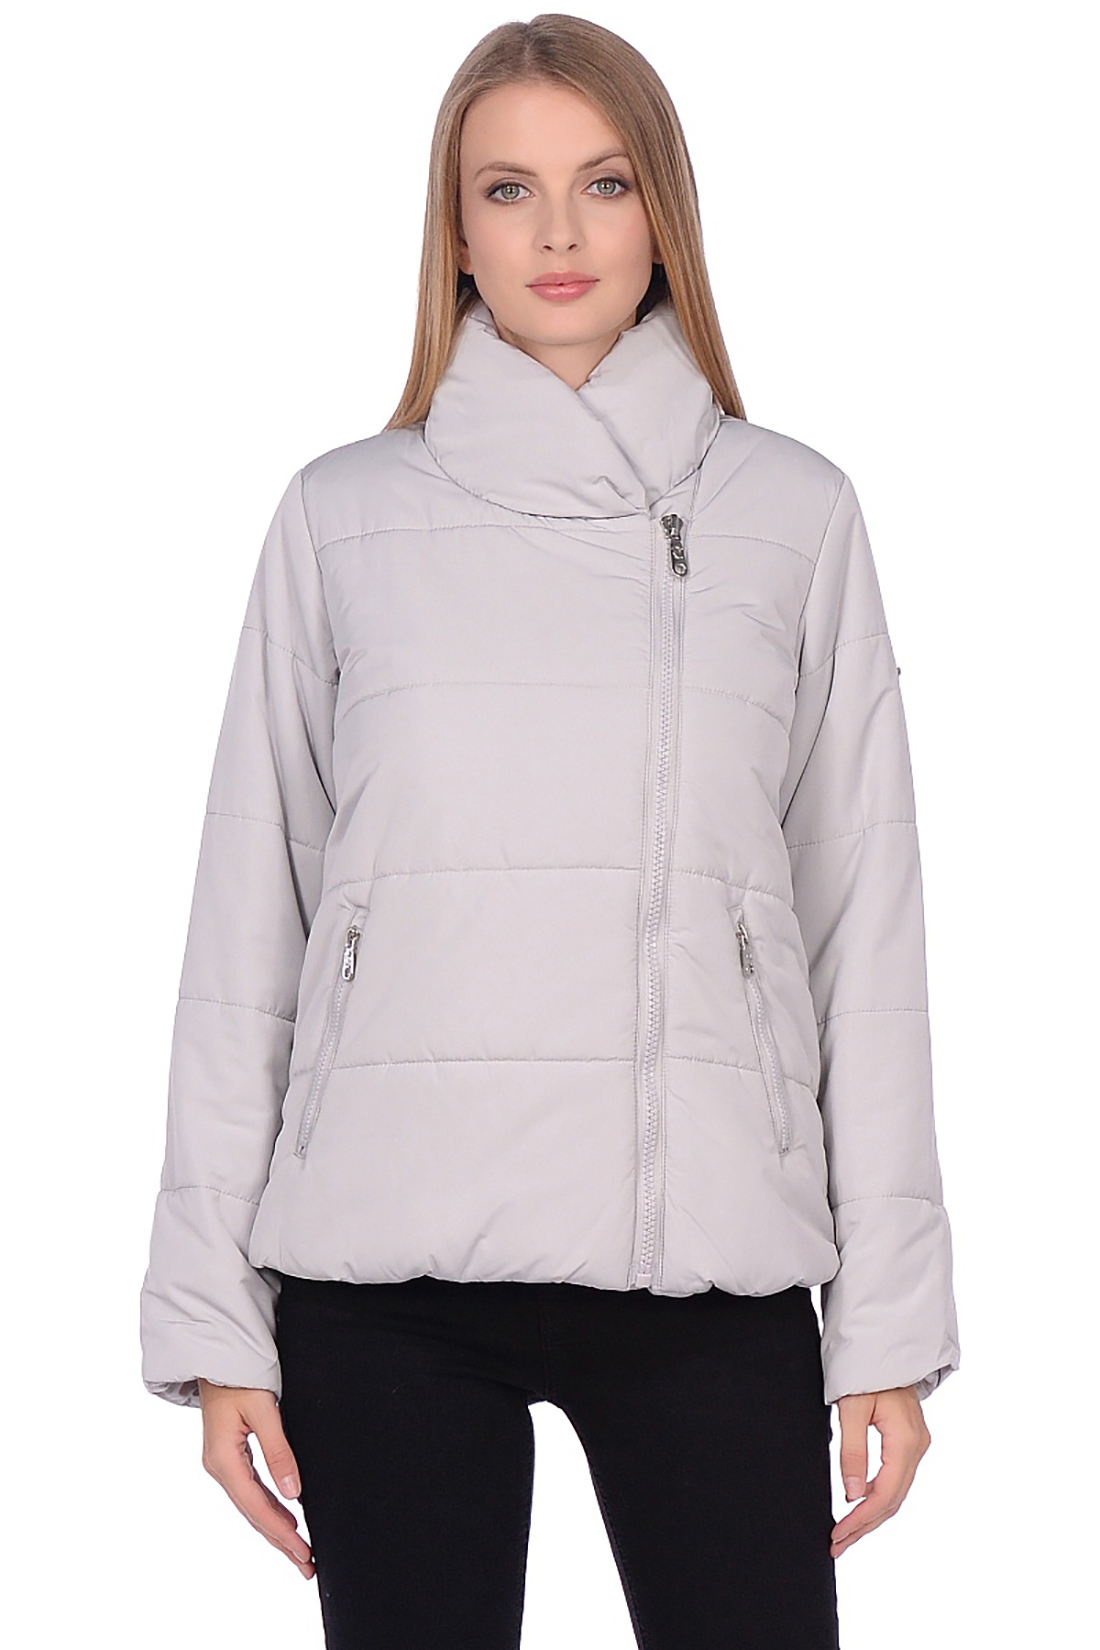 Короткая куртка с асимметричной застёжкой (арт. baon B039506), размер S, цвет серый Короткая куртка с асимметричной застёжкой (арт. baon B039506) - фото 1